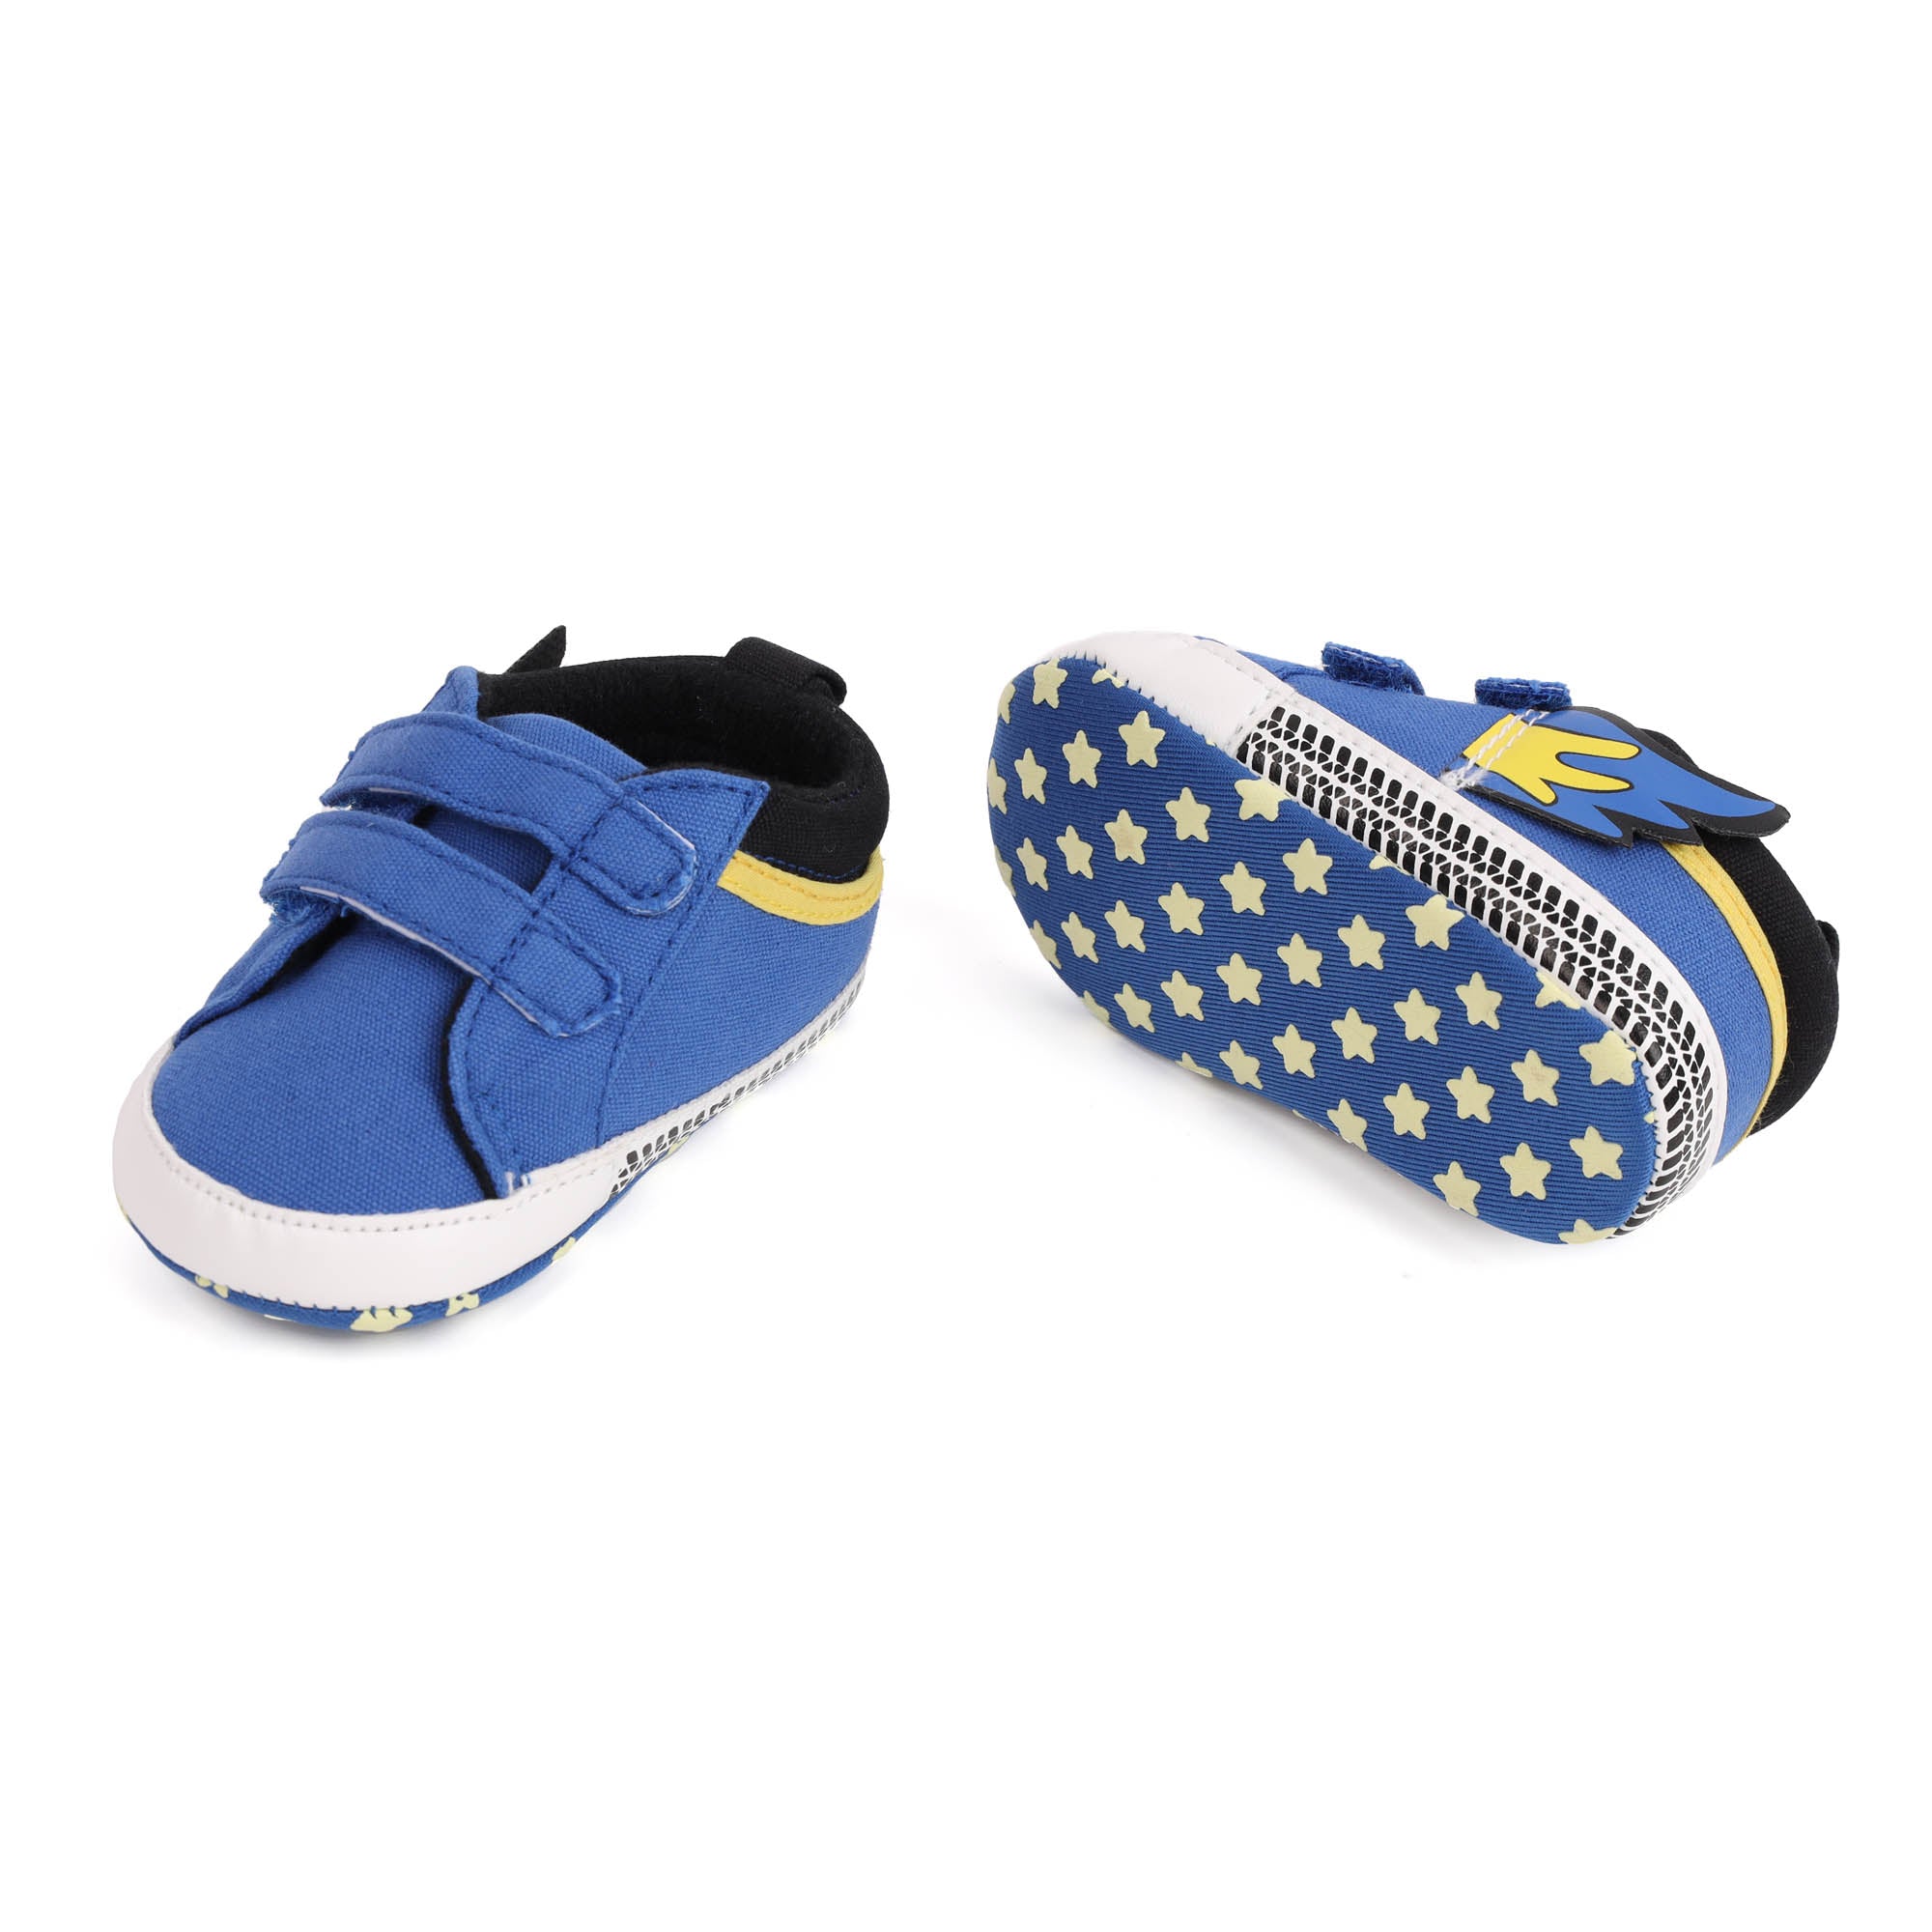 Kicks & Crawl- Flaming Blue Baby Shoes